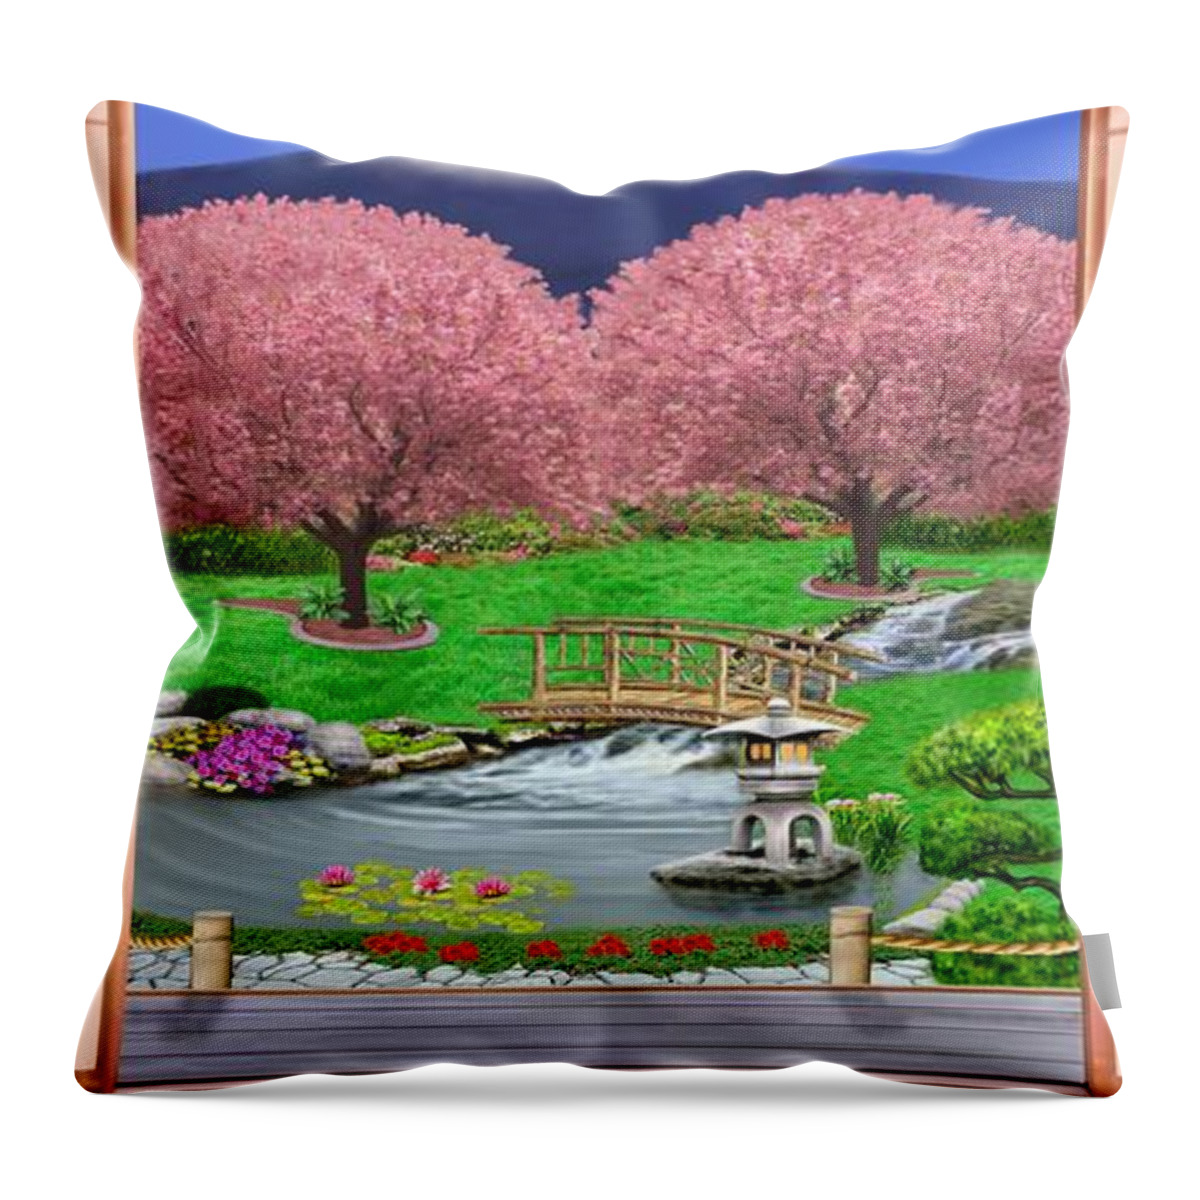 Oriental Art Throw Pillow featuring the digital art Oriental Splendor by Glenn Holbrook